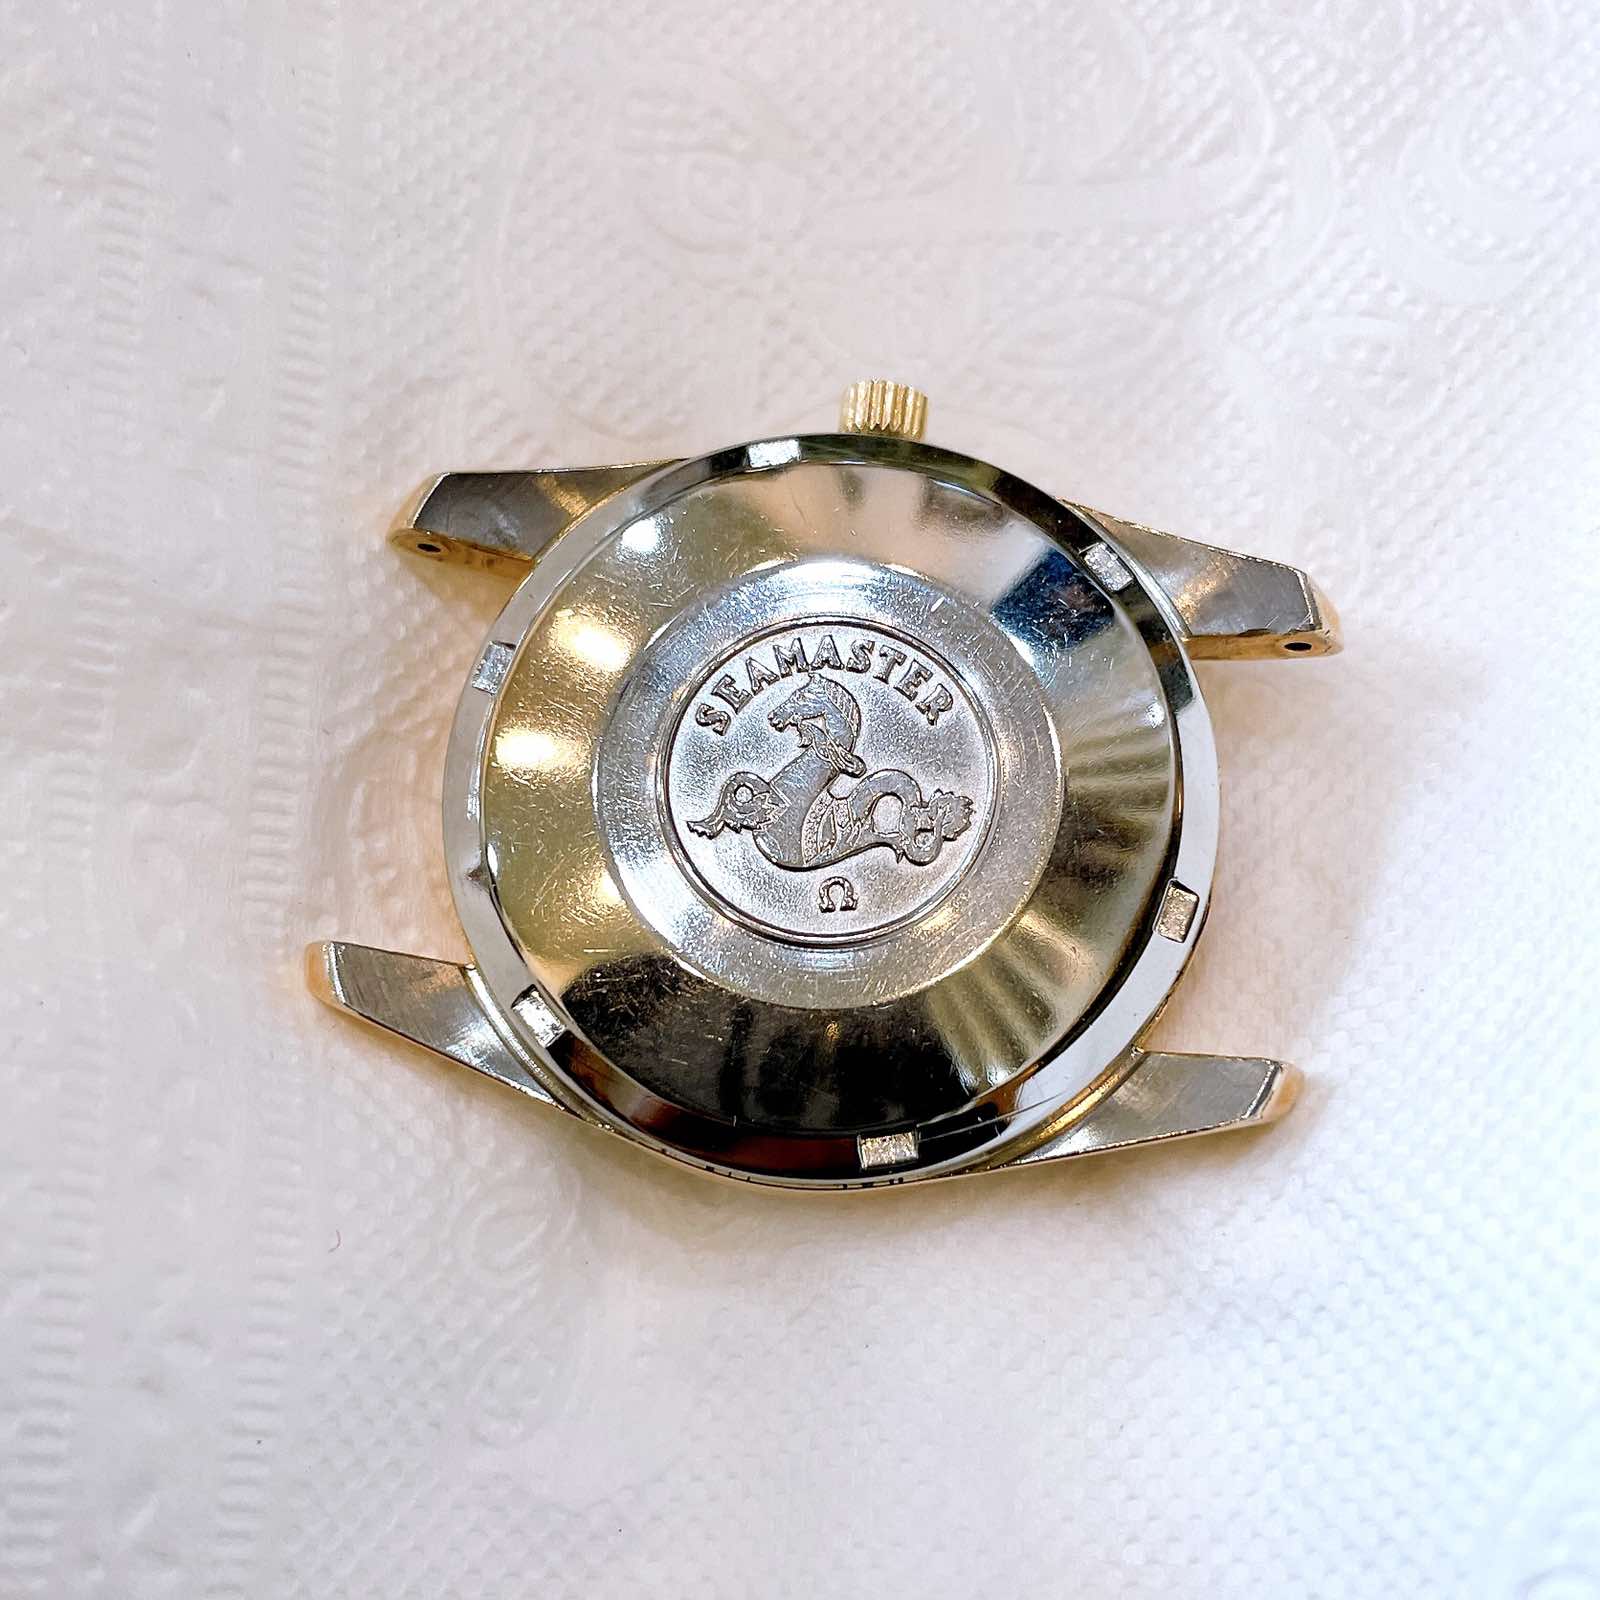 Đồng hồ cổ Omega automatic Seamaster vàng hồng phiên bản đặc biệt chính hãng Thụy Sĩ 